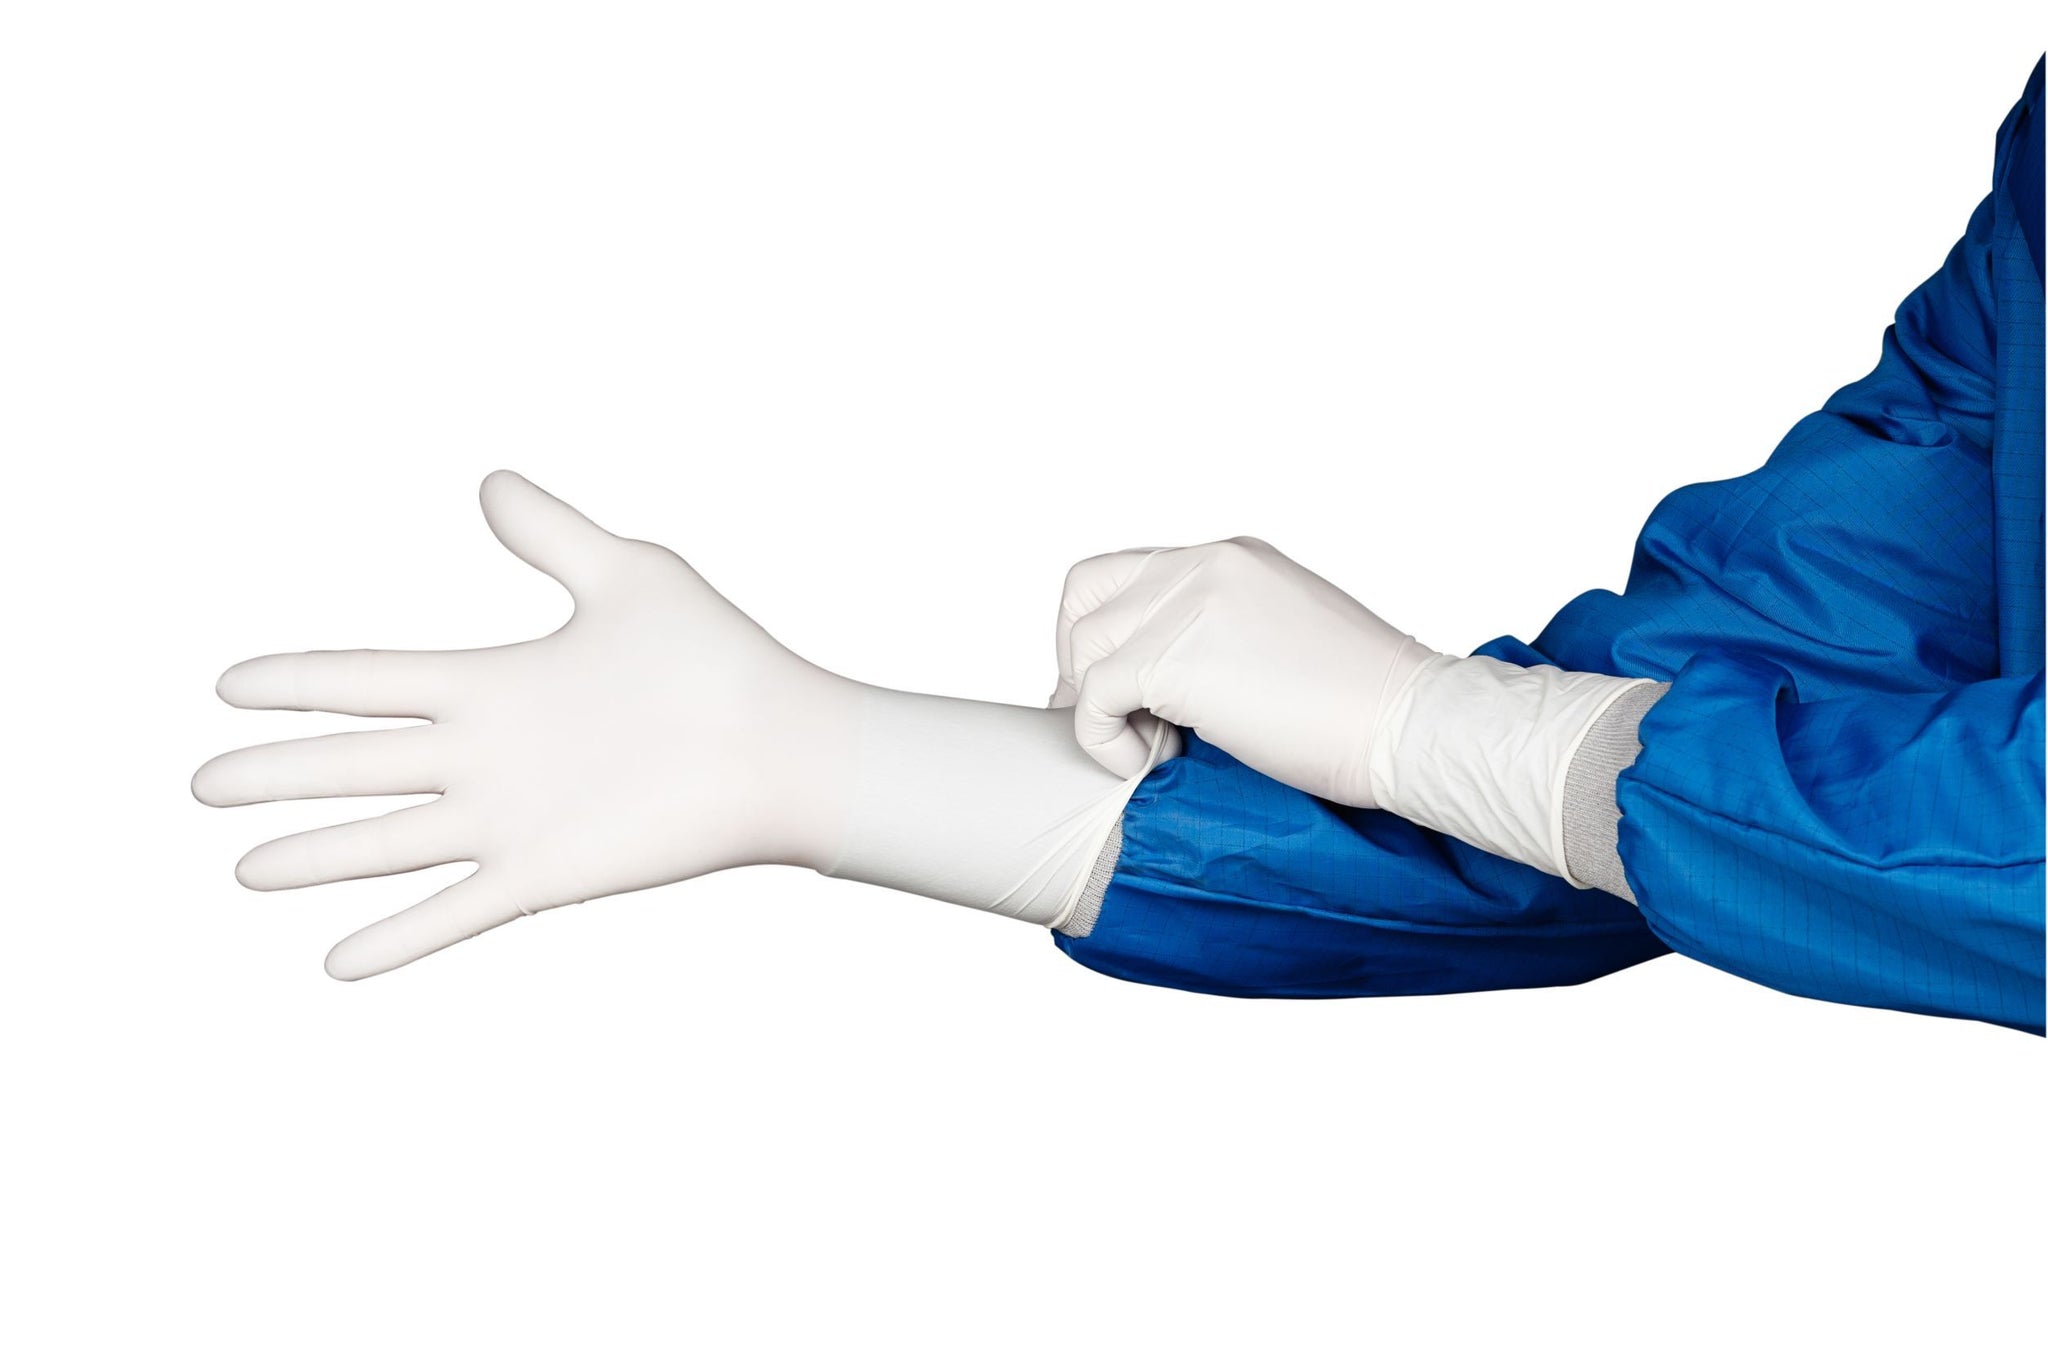 gloves, nitrile gloves, exam gloves, latex gloves, vinyl gloves, medical gloves, cleanroom gloves